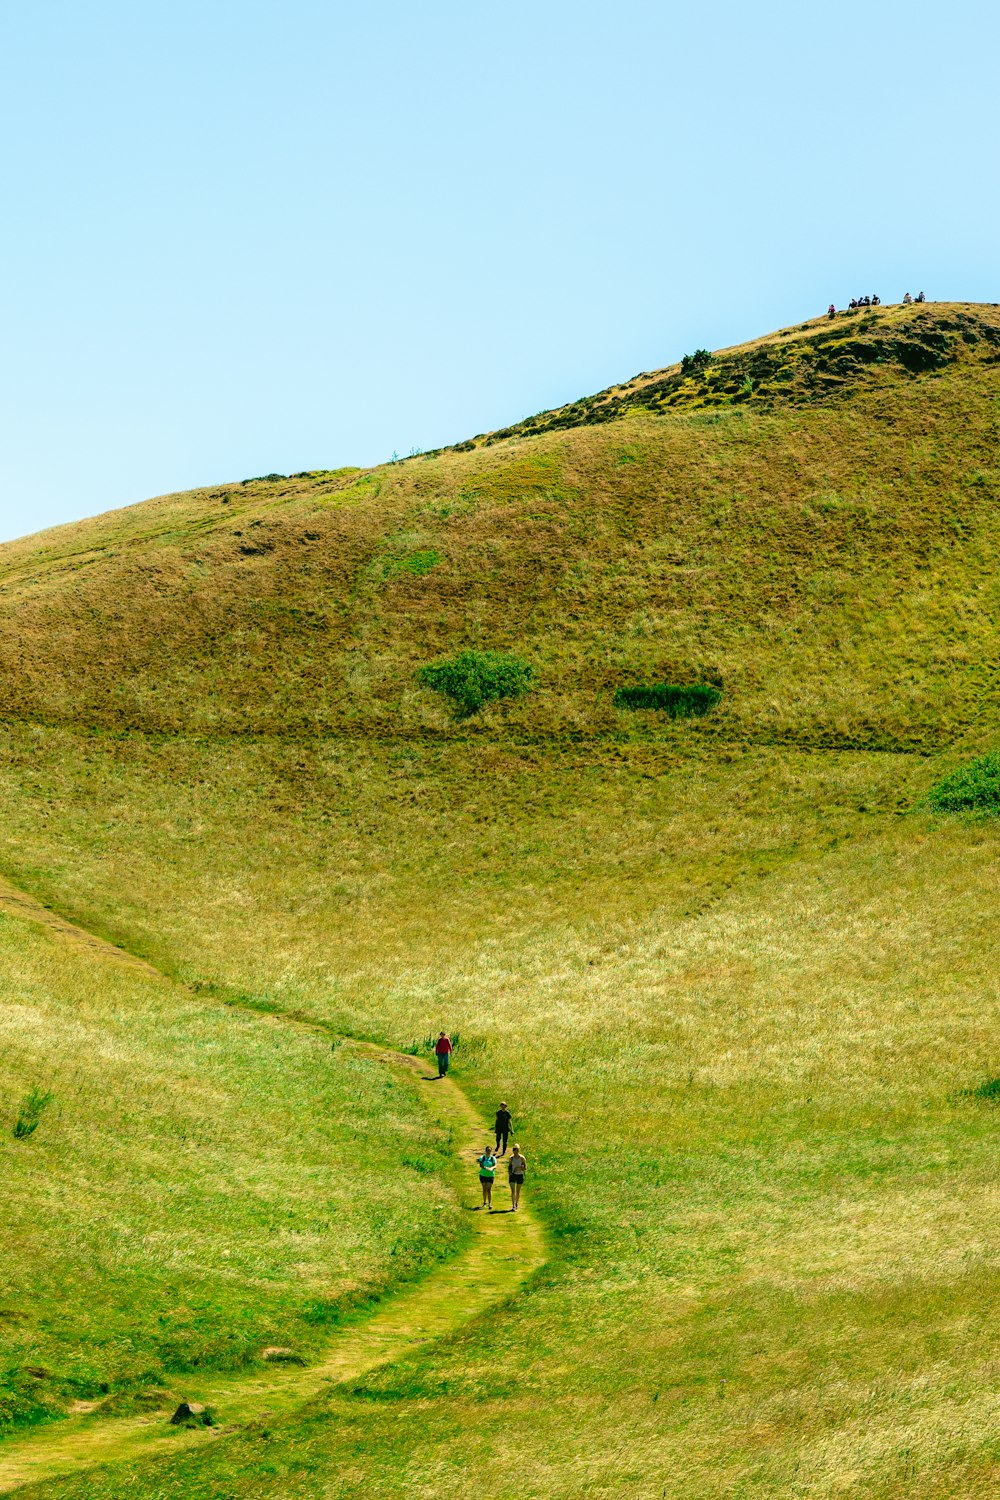 무성한 녹색 언덕을 가로질러 걷는 한 무리의 사람들